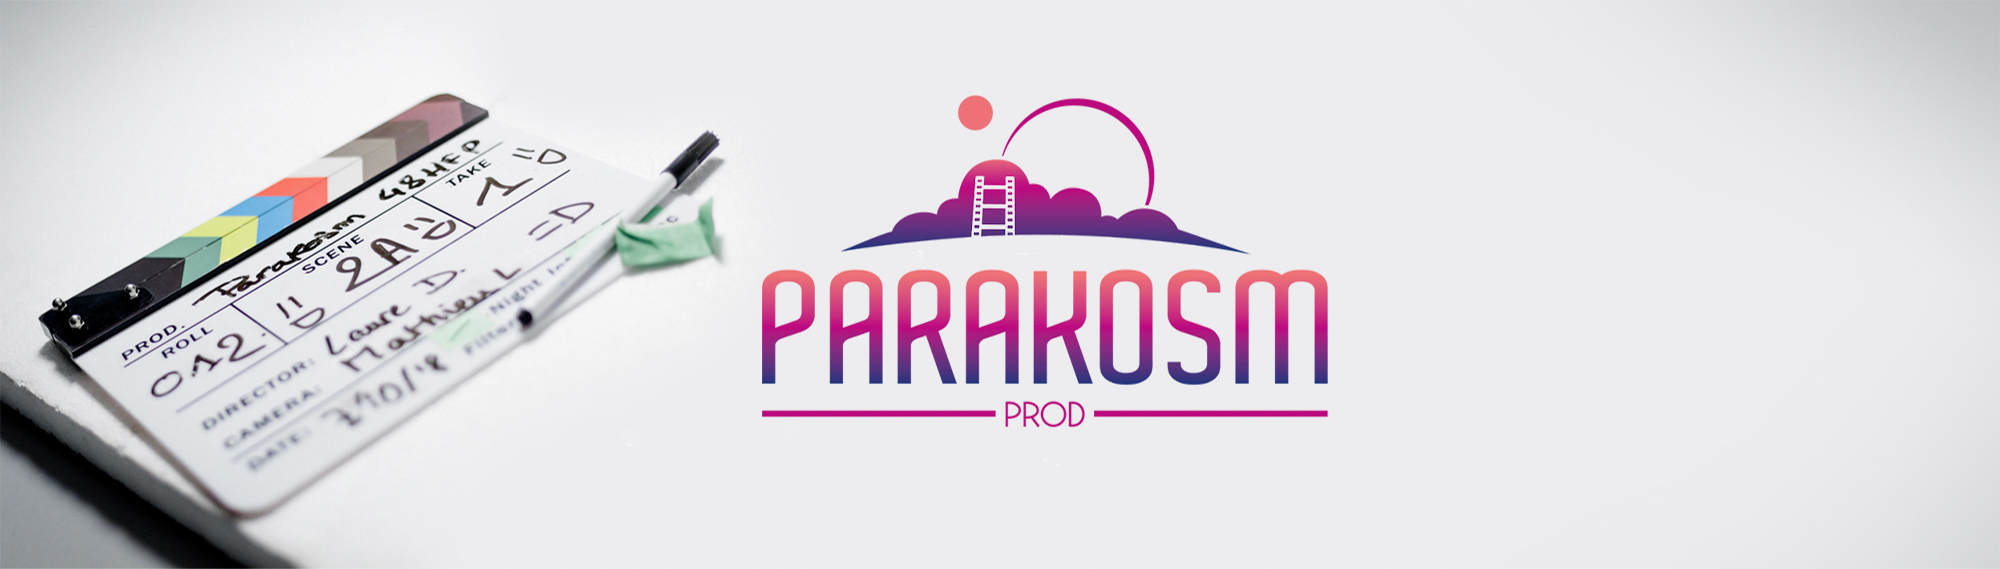 Logo Parakosm et Clap cinéma